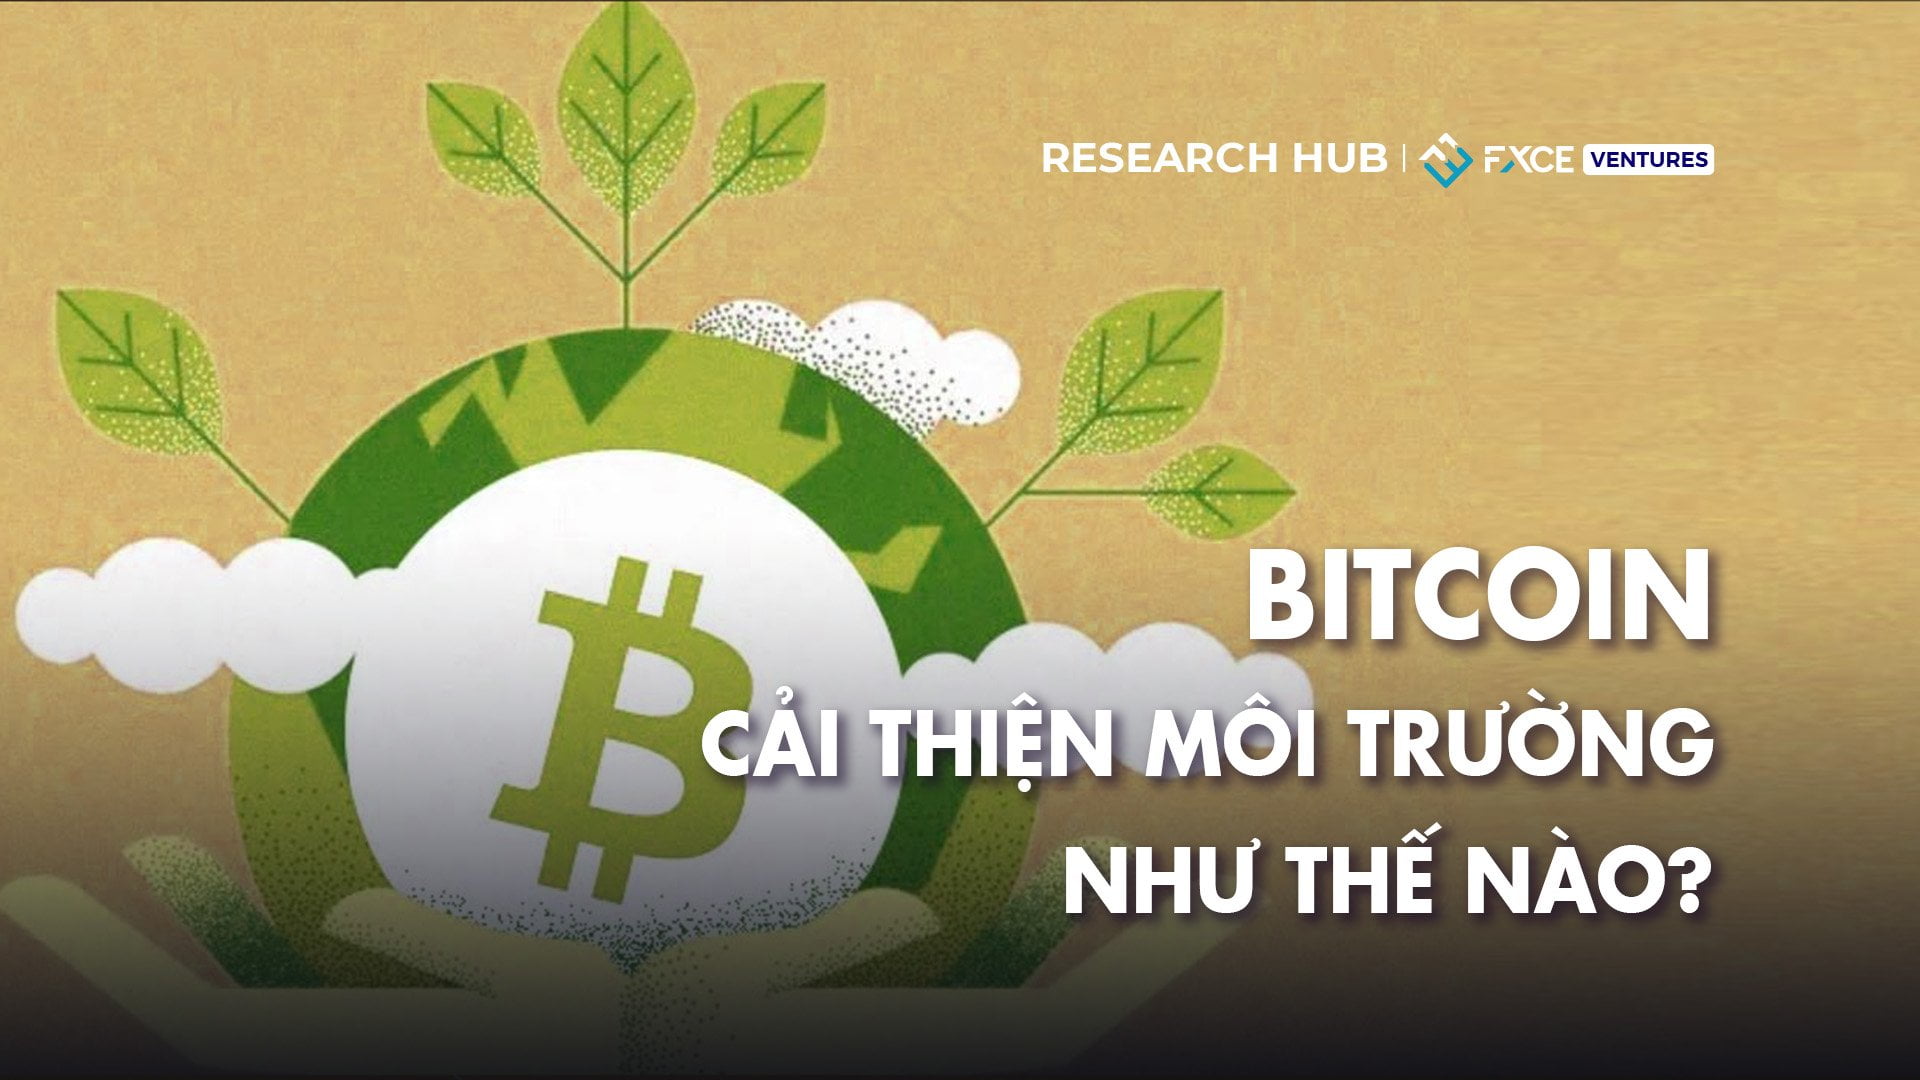 Bitcoin (BTC) đã cải thiện môi trường như thế nào?